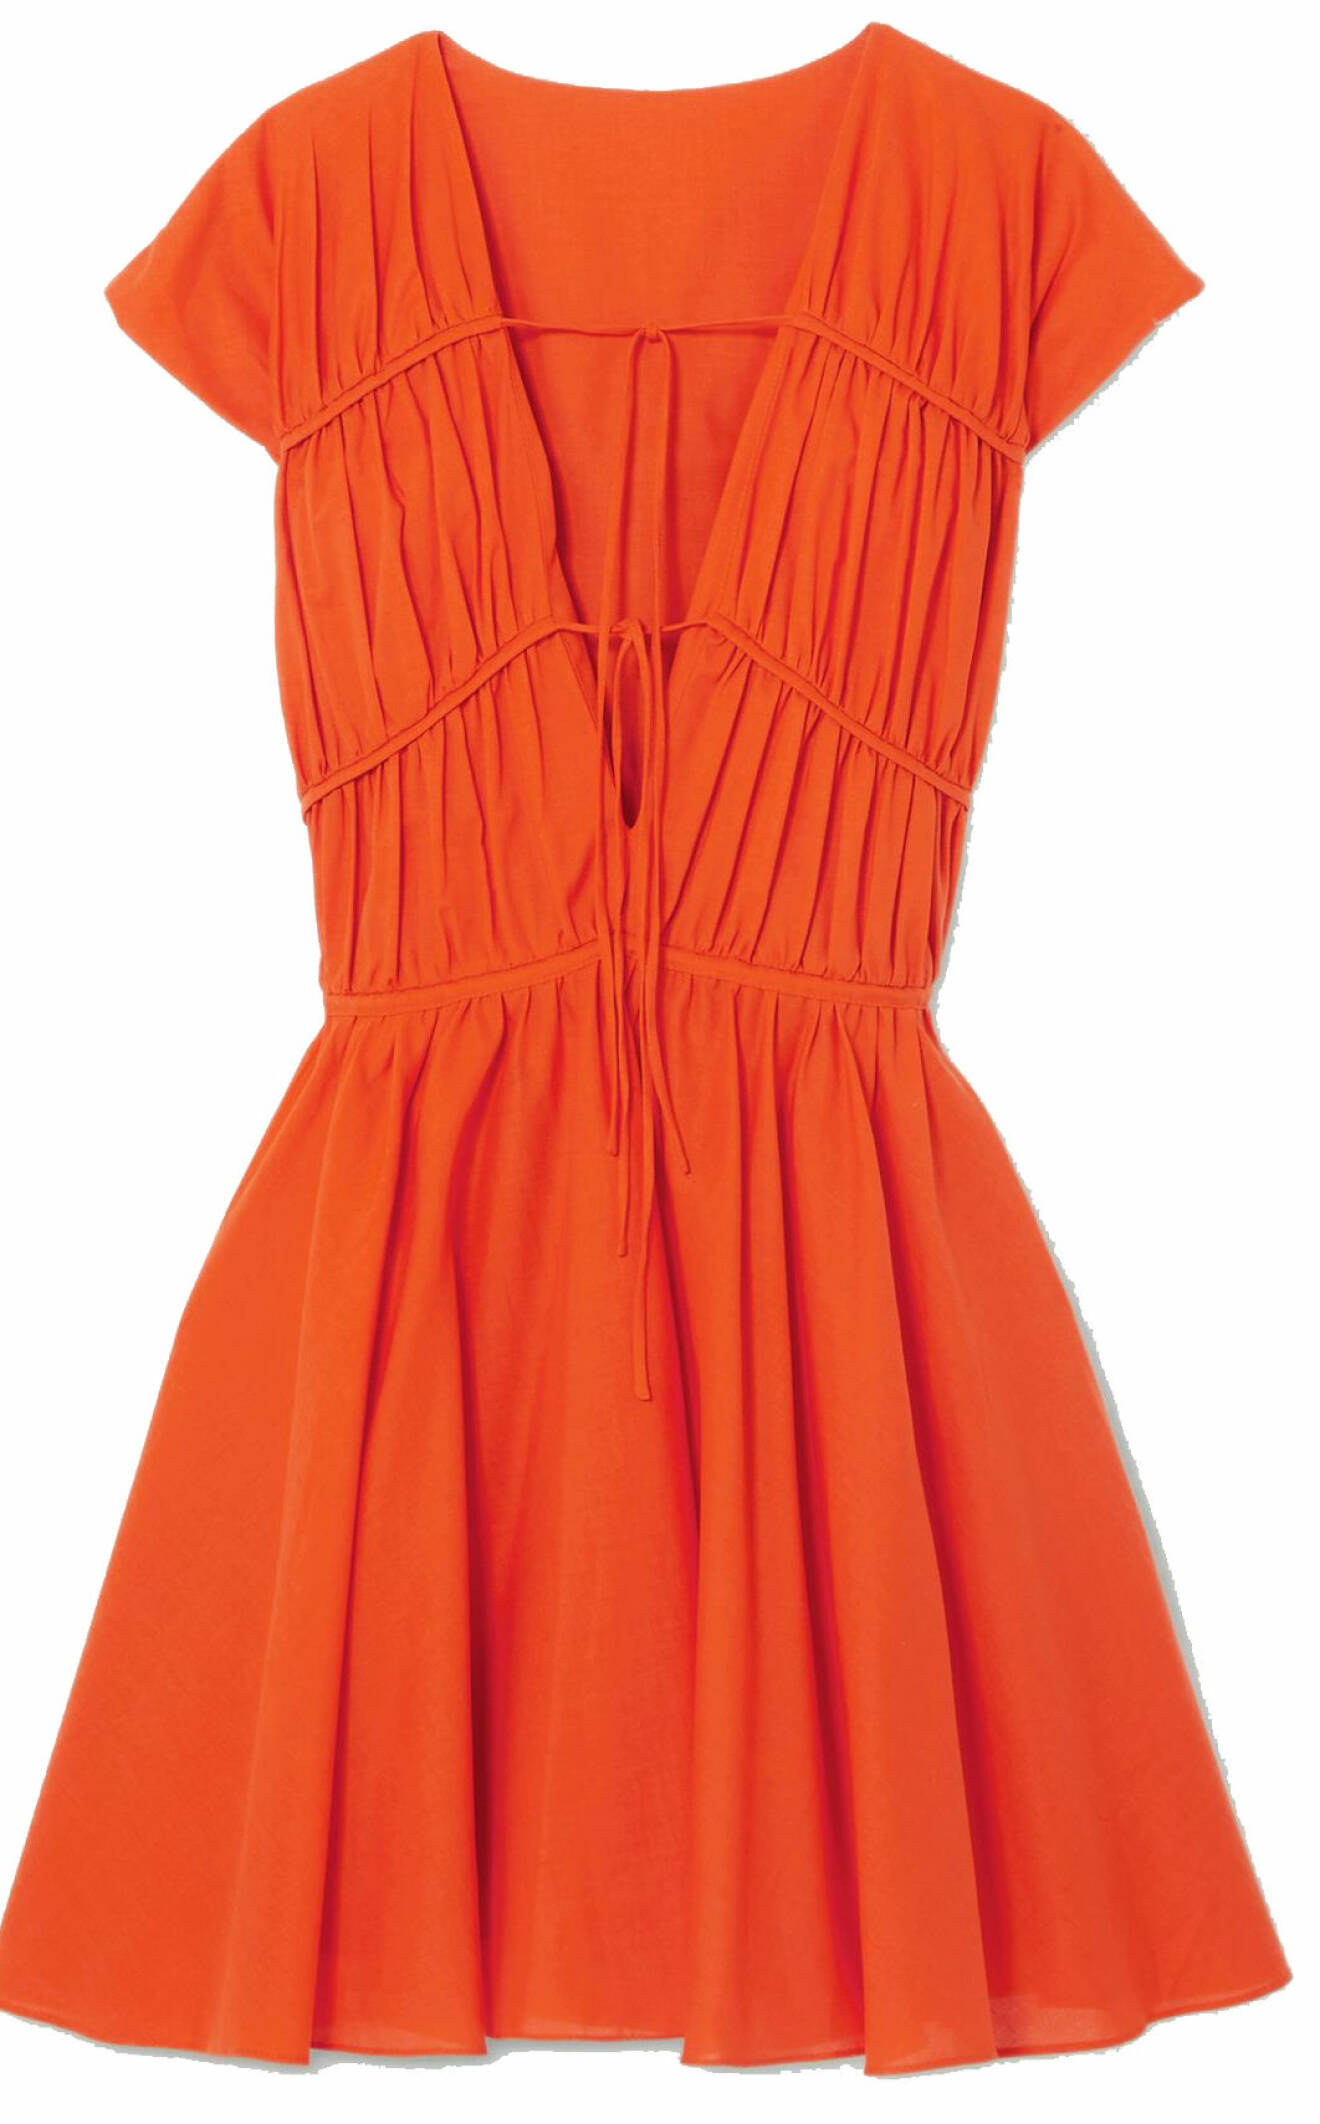 Kort klänning i brinnande orange från Tove studio, finns att köpa här.